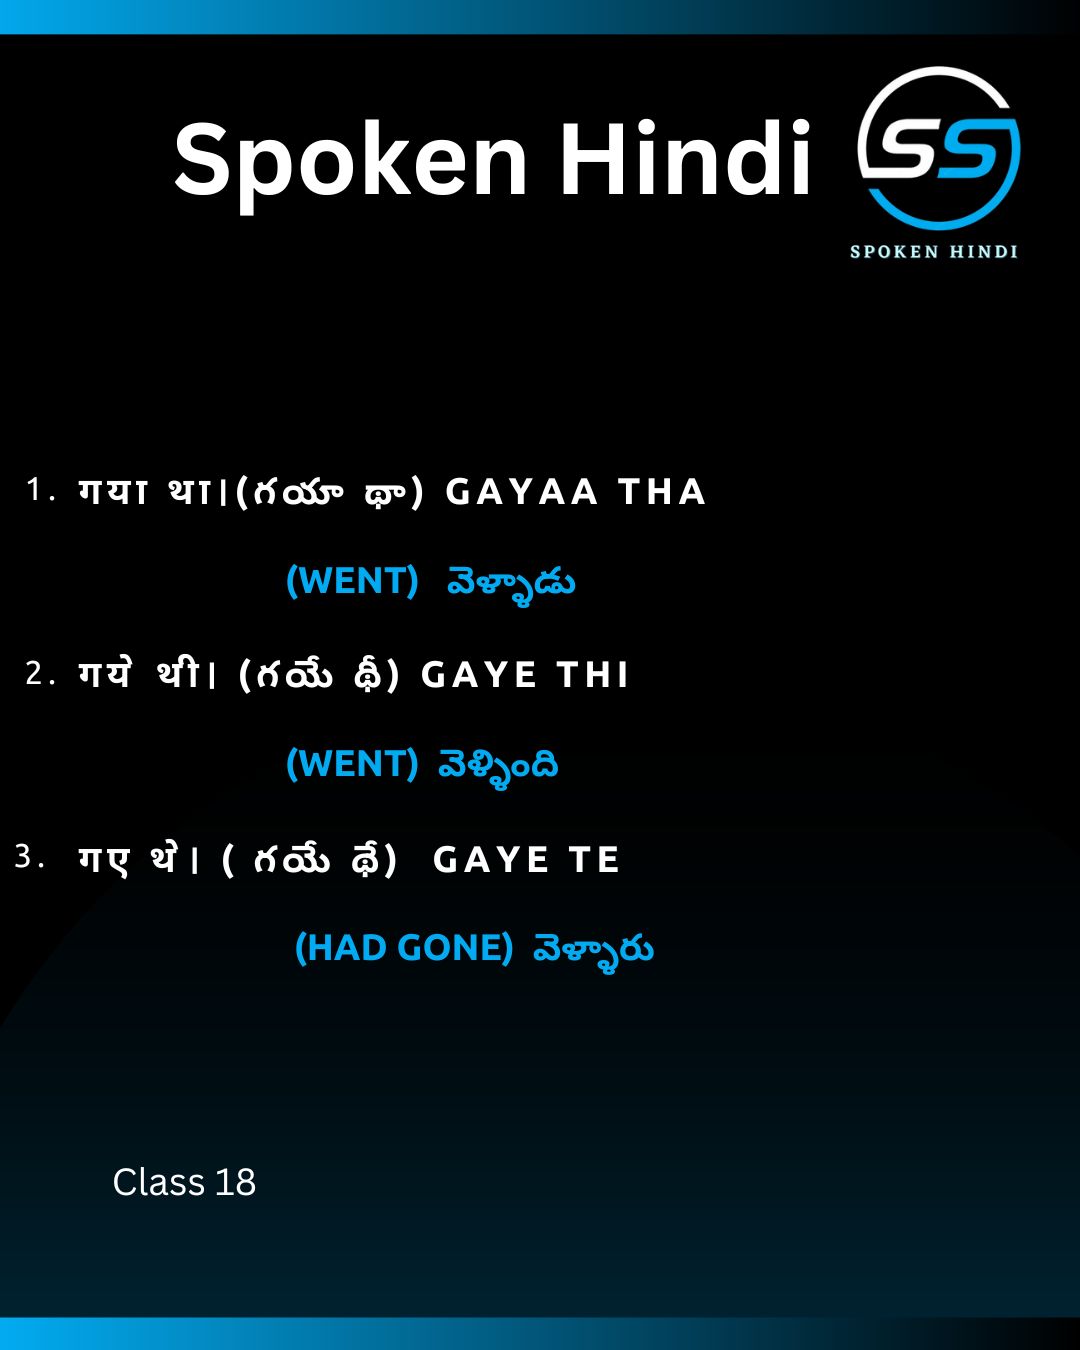 Spoken Hindi Regular Words